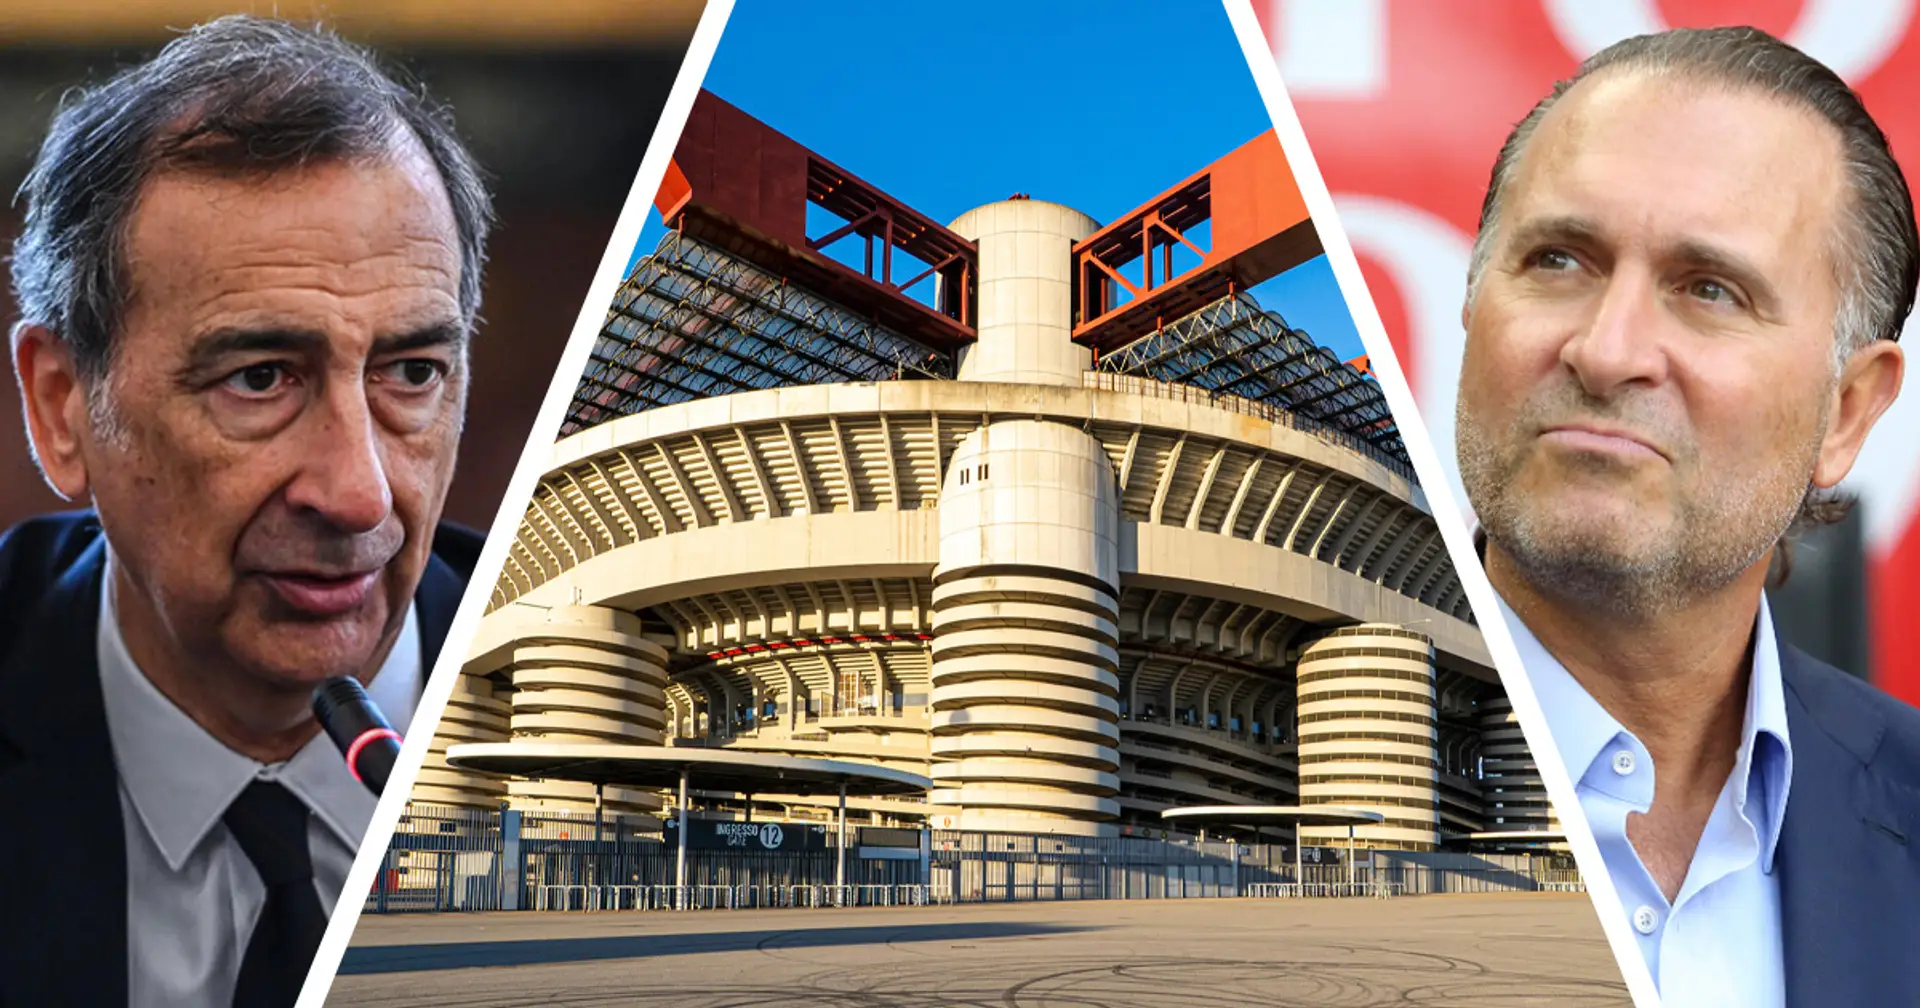 Sala non perde le speranze, nuovo appello al Milan per lo stadio: "Salvare San Siro è l'unica via!"